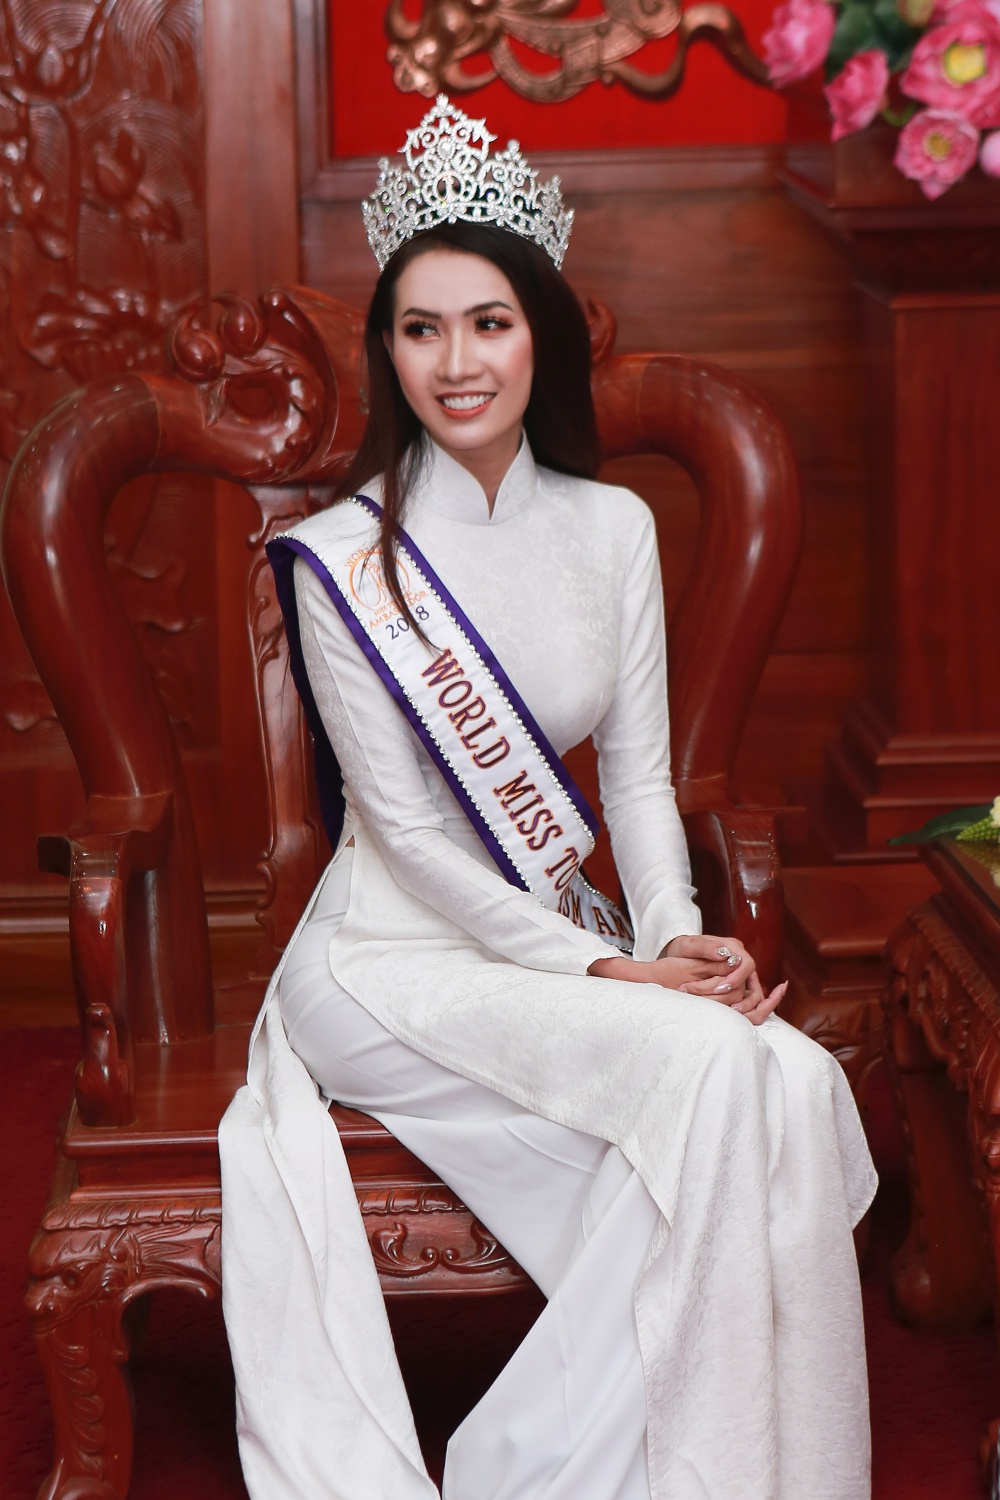 Phan Thị Mơ khoe vẻ đẹp vạn người mê trong chuyến thăm quê đầu tiên sau đăng quang Hoa hậu 3